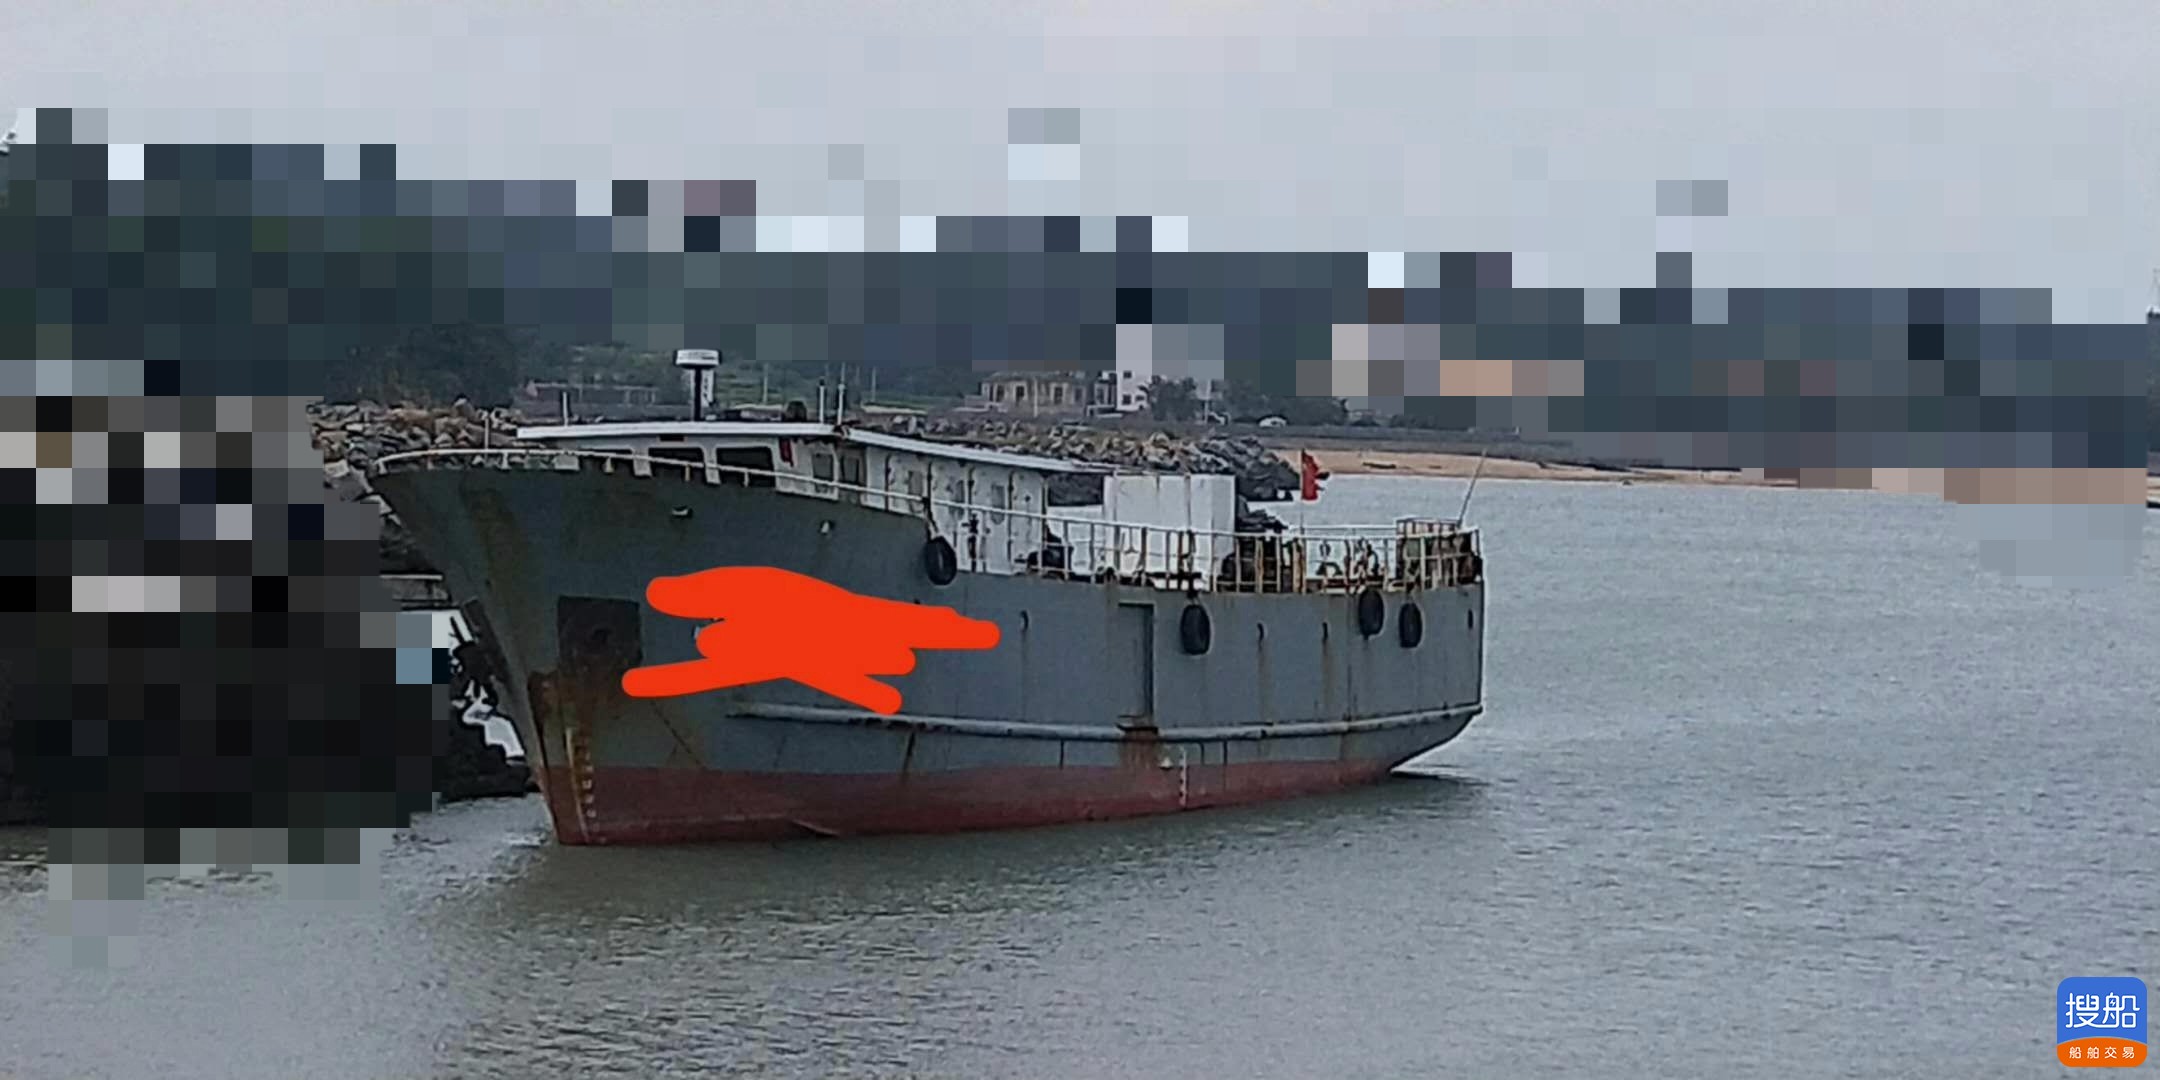 出卖:200T 渔式干货船 祸建 宁德市-2.jpg